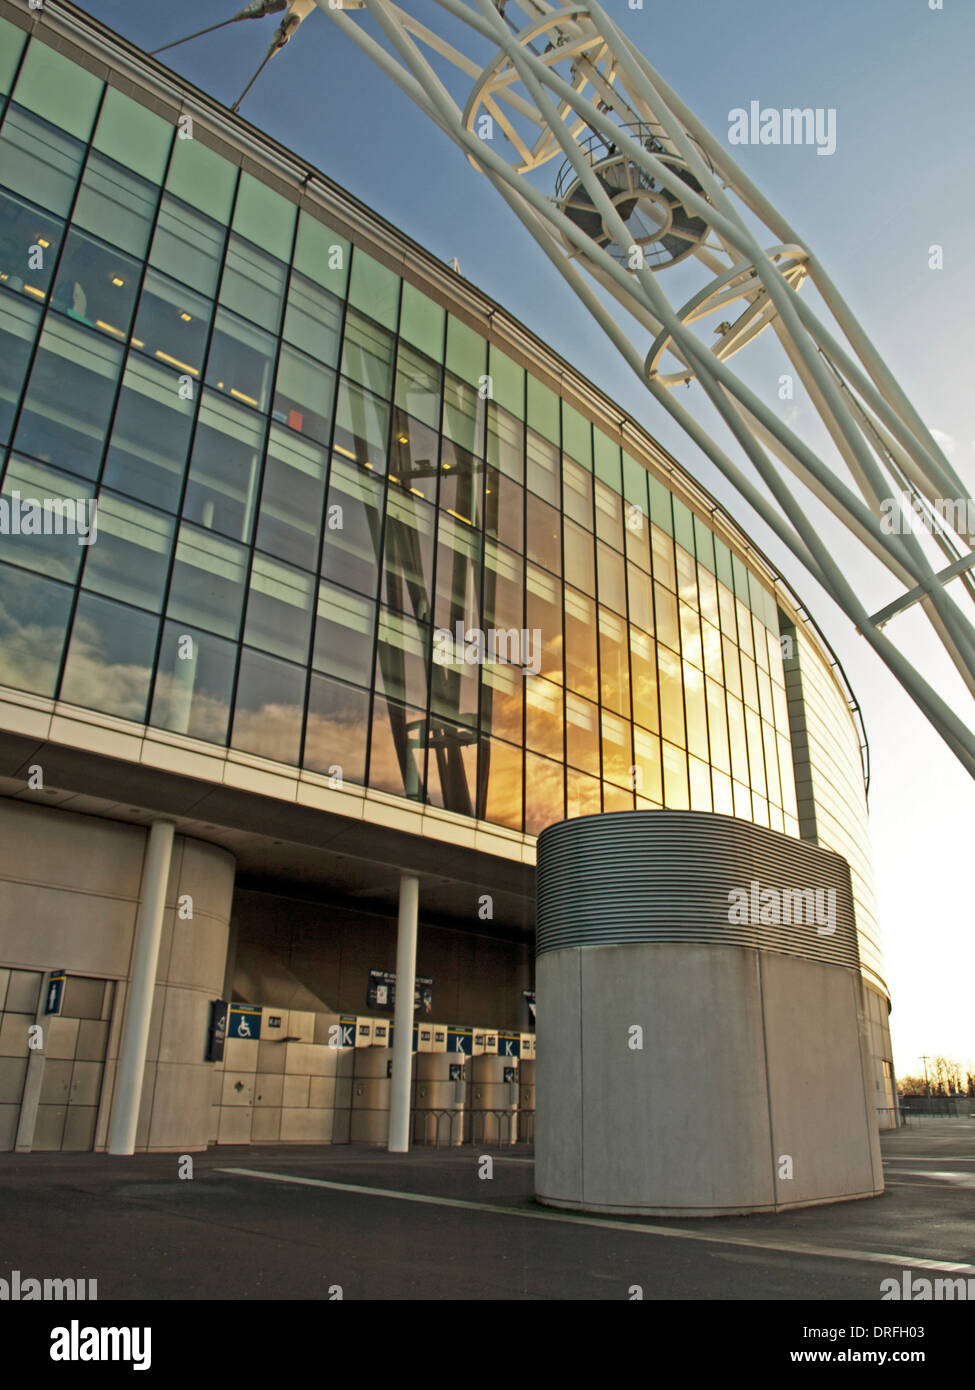 Dettaglio dallo stadio di Wembley che mostra l'arco, London Borough of Brent, London, England, Regno Unito Foto Stock